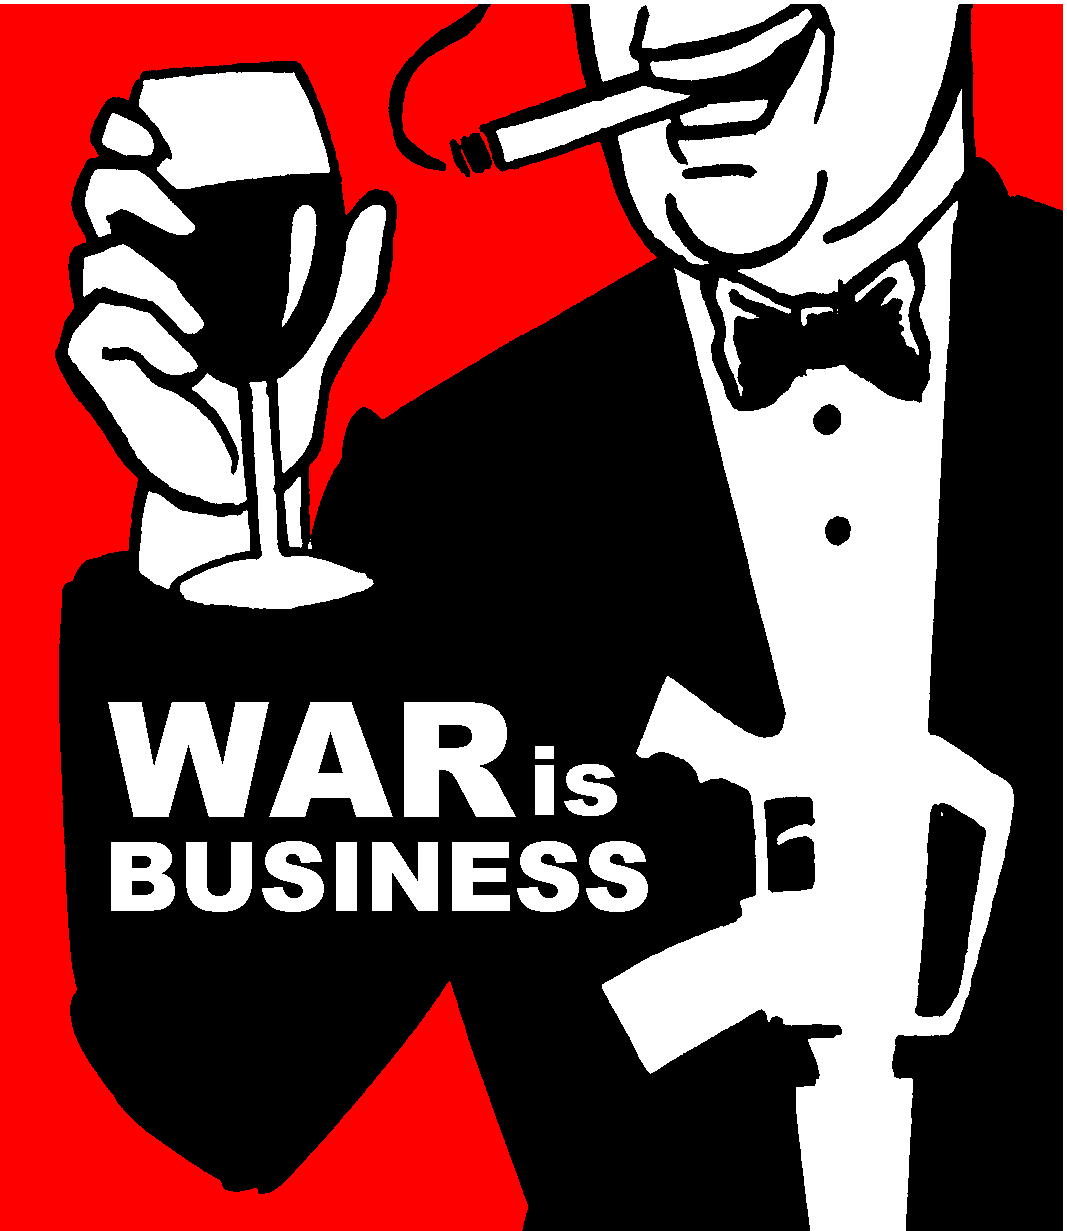 War is business